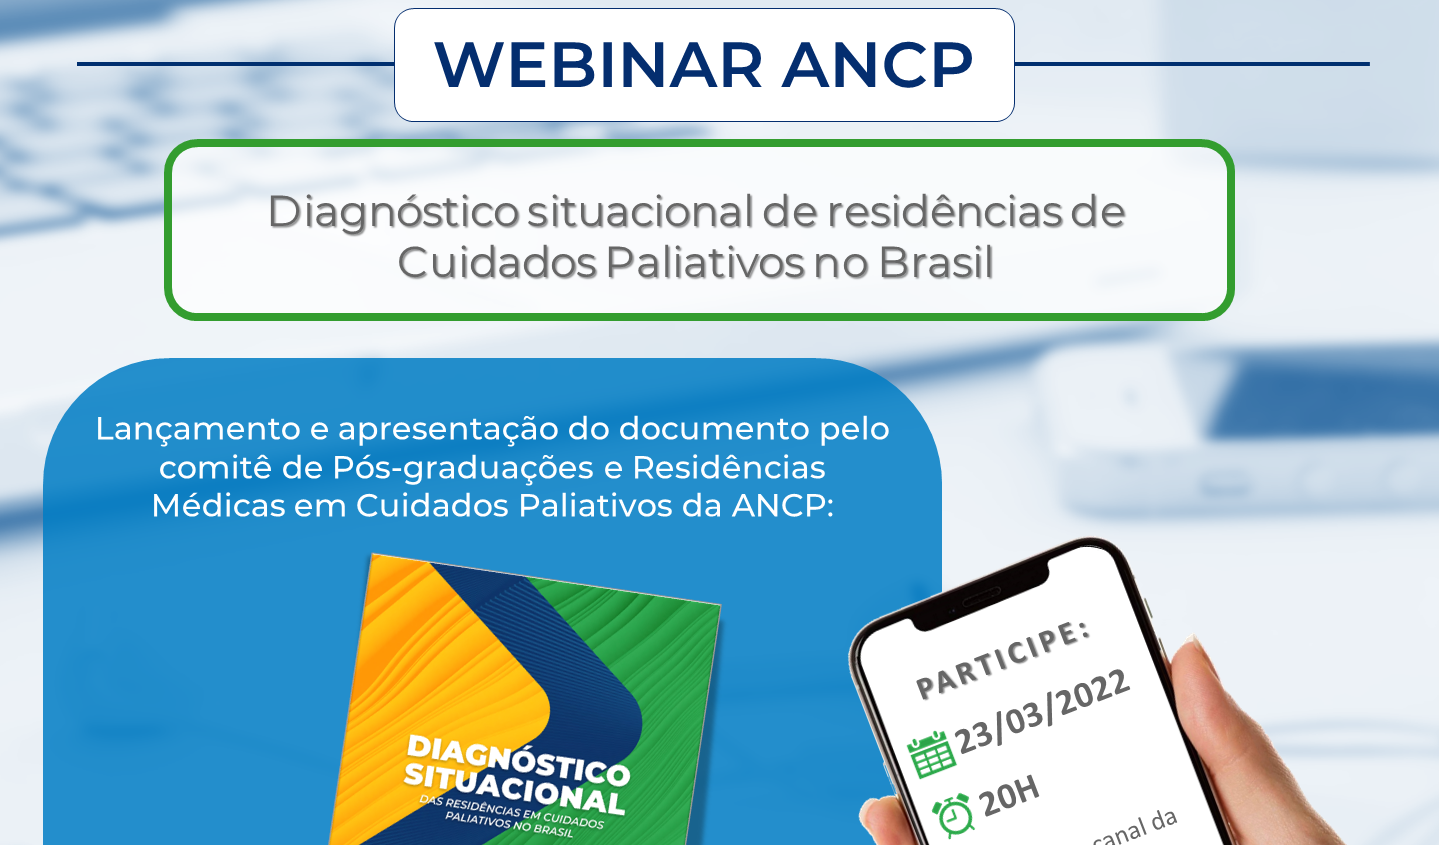 Webinar ANCP – “Diagnóstico situacional das Residências em Cuidados Paliativos no Brasil”